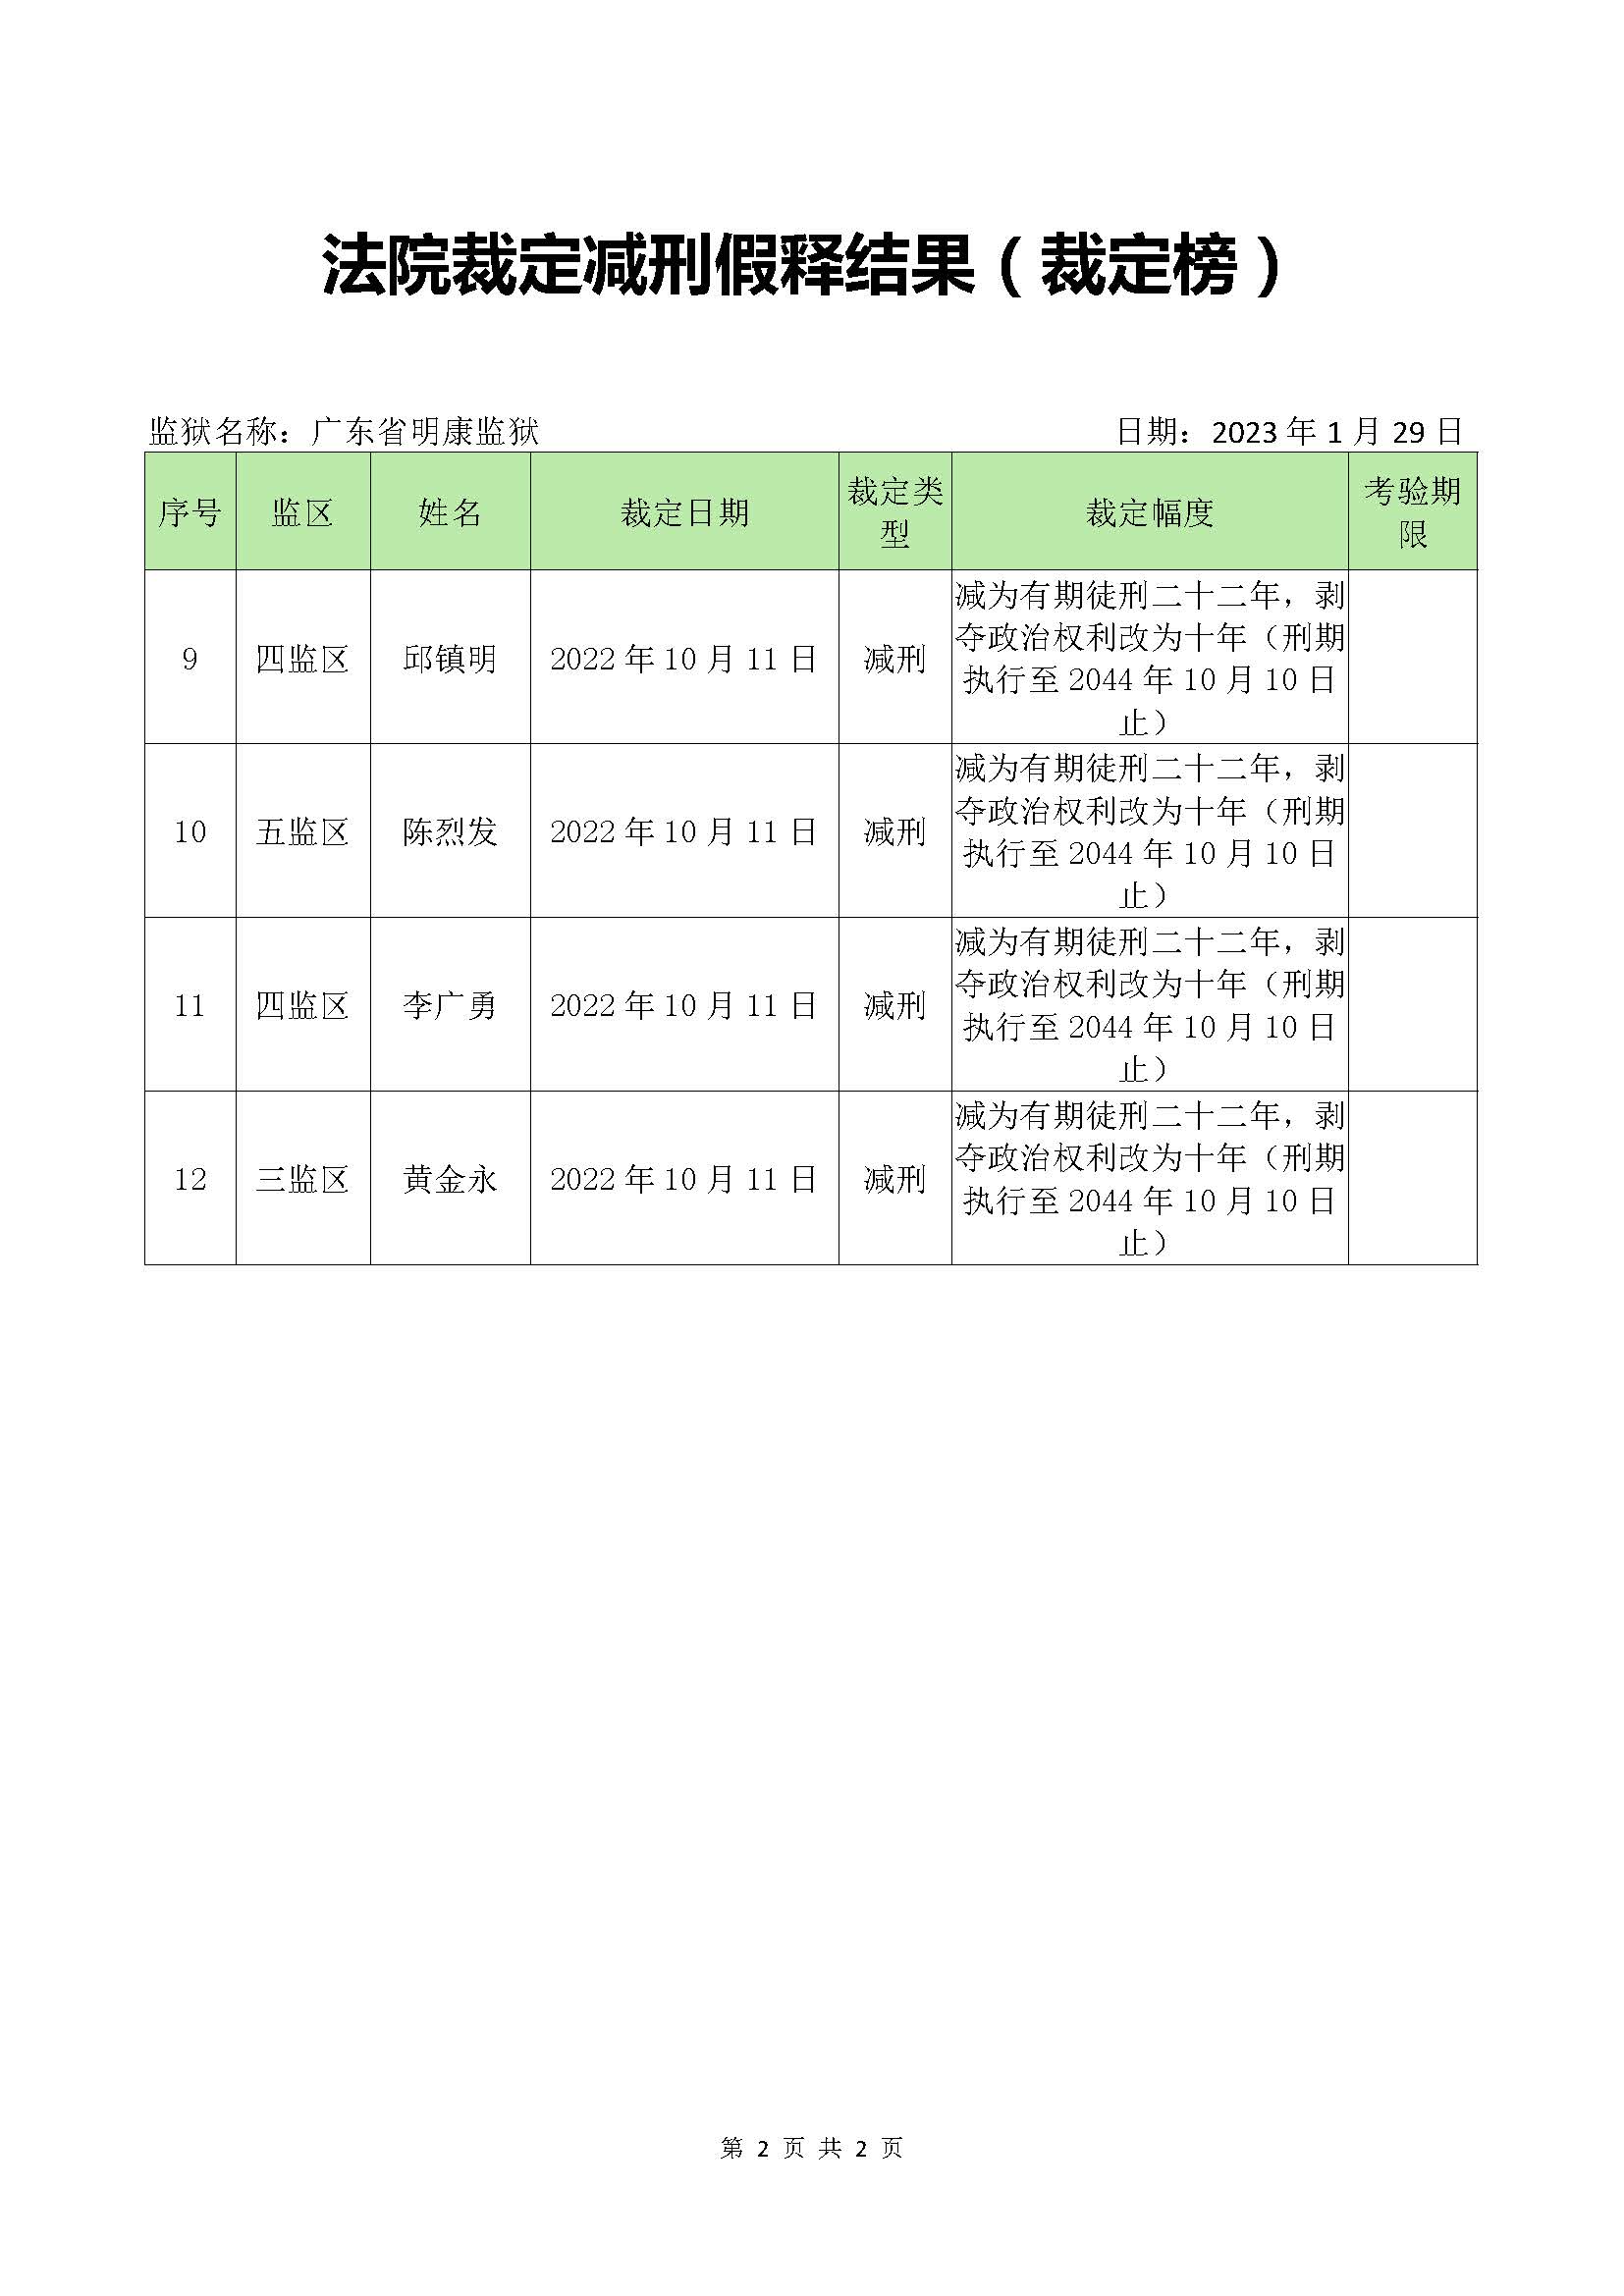 广东省明康监狱法院裁定减刑假释结果（裁定榜）_页面_2.jpg